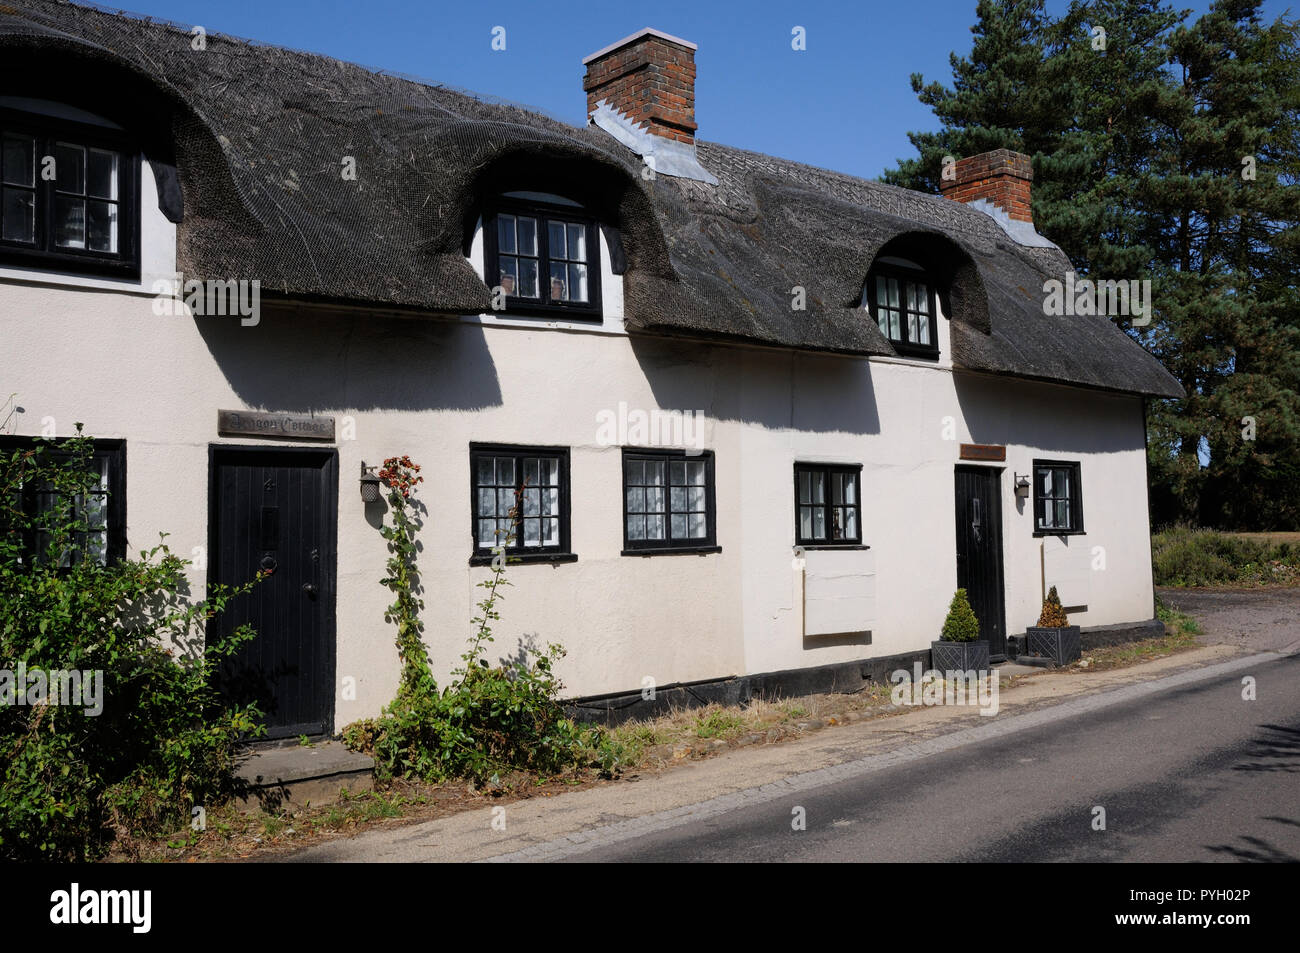 Hainbuche, Great Wymondley, Hertfordshire, ist eine Reihe von strohgedeckten Hütten, die den Namen Frauen haben wiederhergestellt Stockfoto